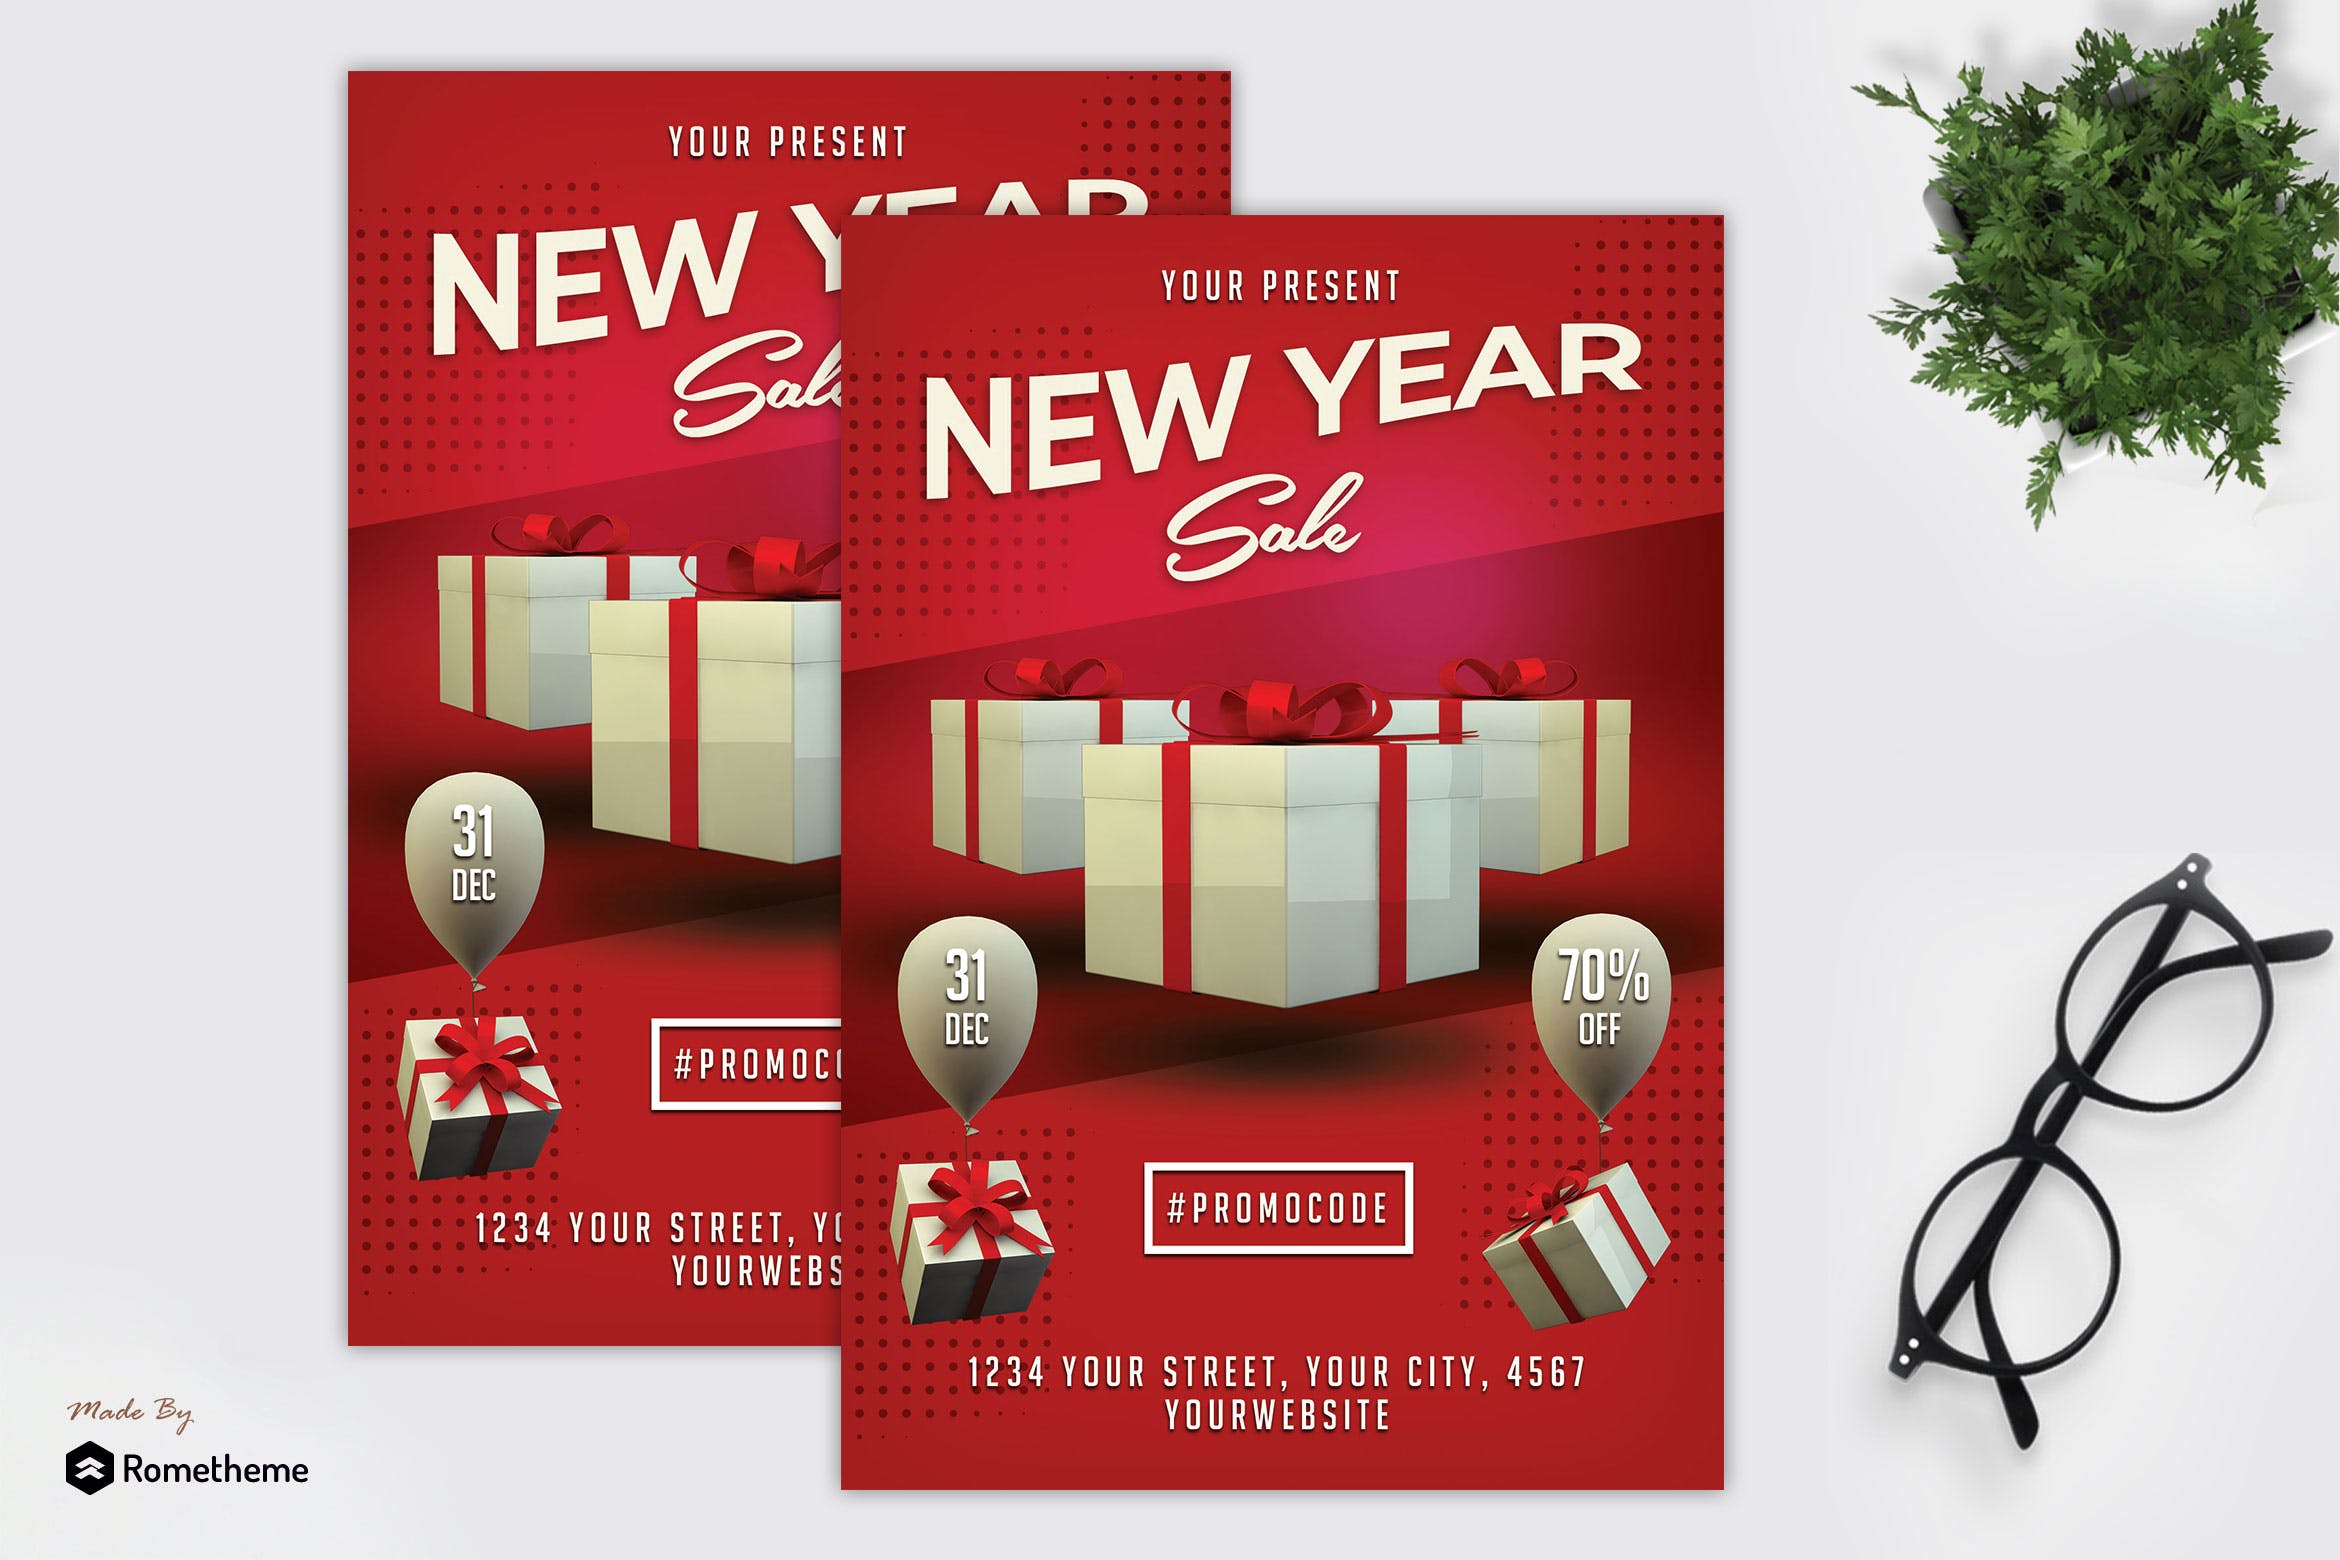 新年礼物专场促销活动广告海报传单设计模板 New Year Sale Flyer MR插图